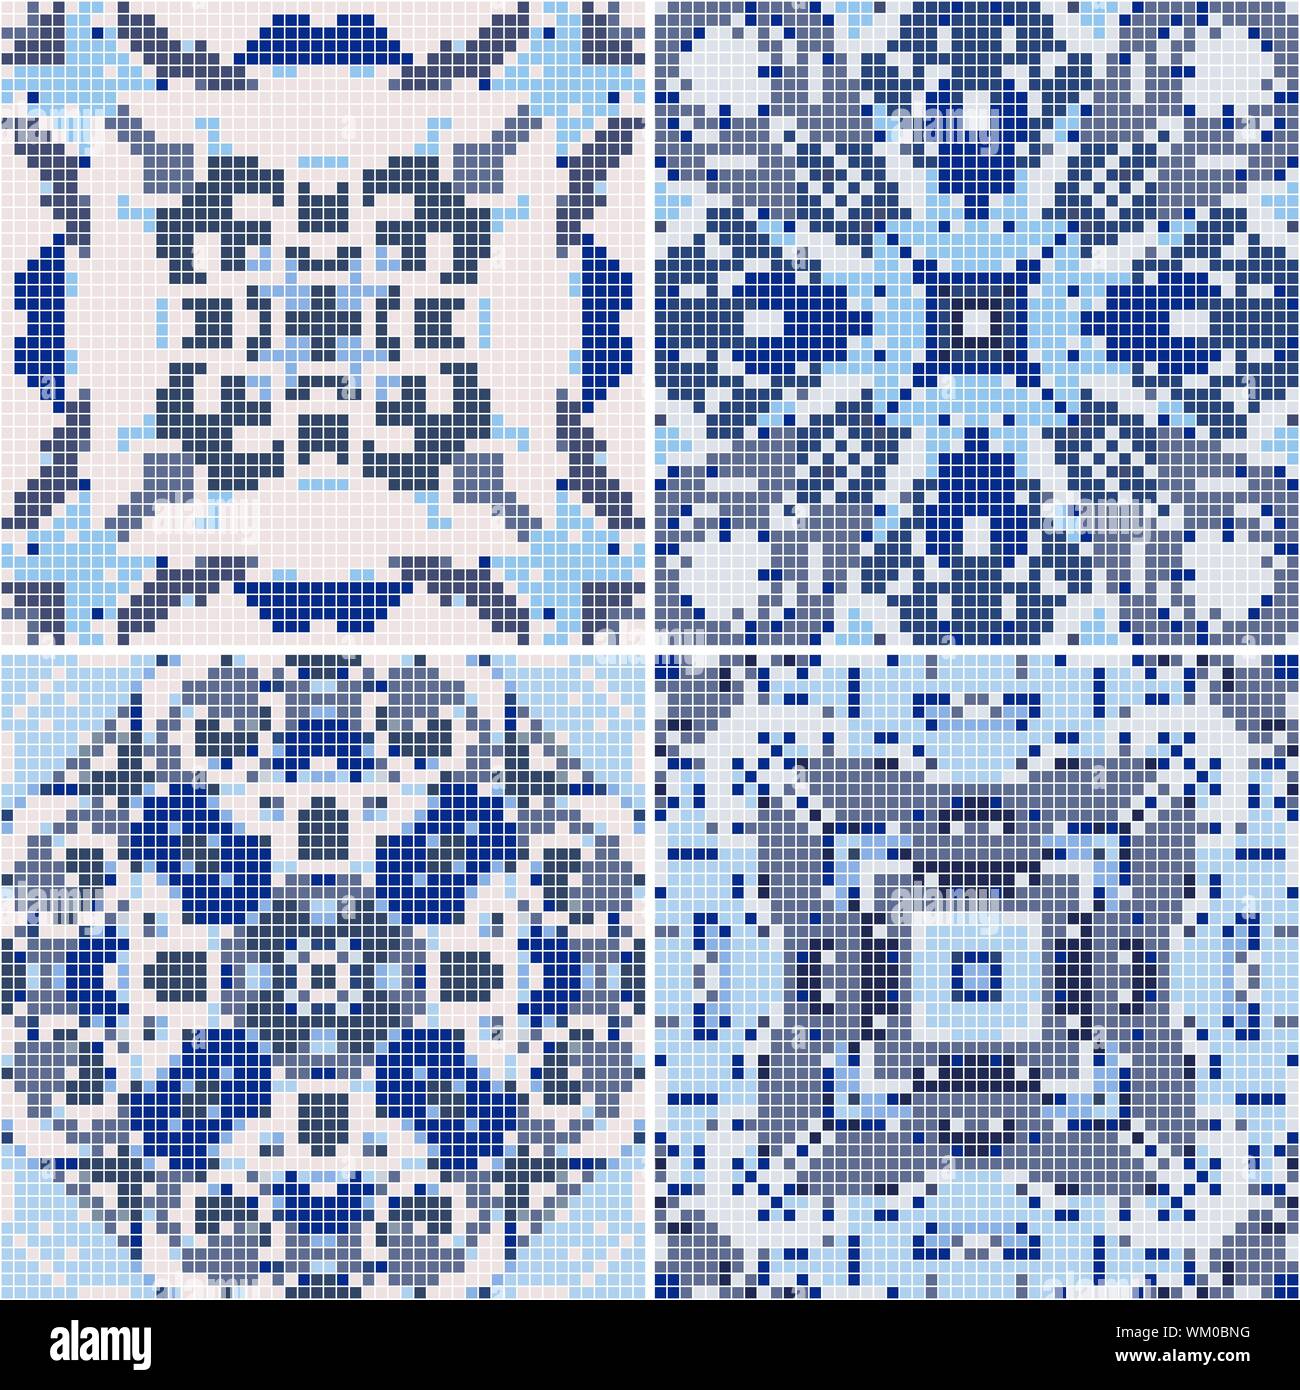 Eine Sammlung von Keramikfliesen in Blau retro Farben. Eine Reihe von quadratischen Muster im ethnischen Stil. Vector Illustration. Stock Vektor